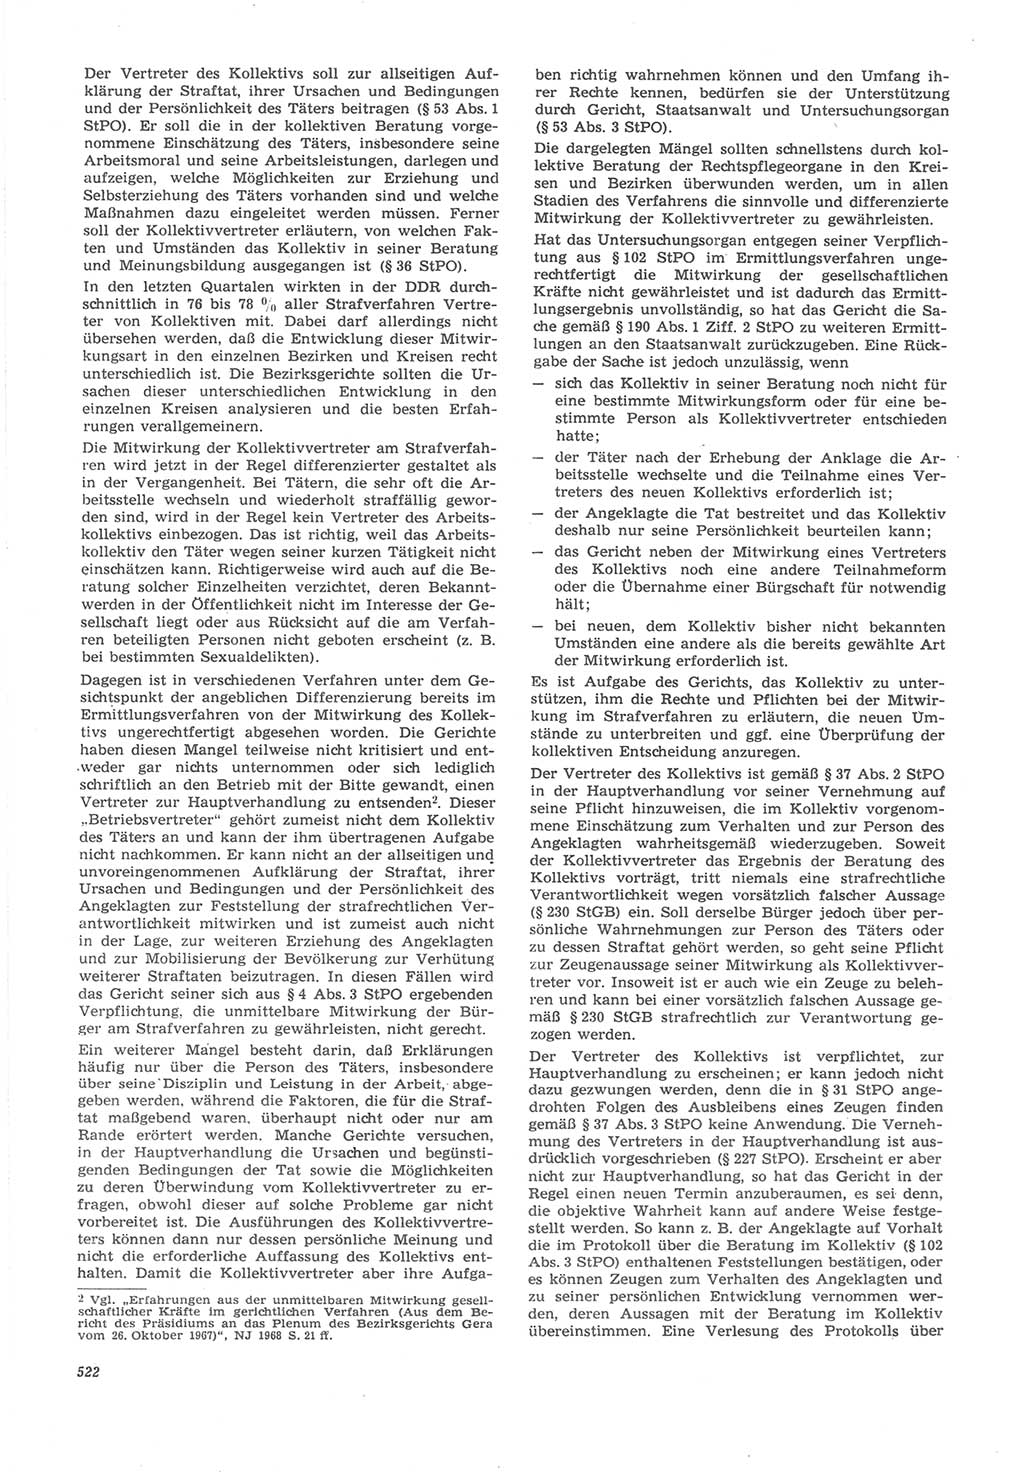 Neue Justiz (NJ), Zeitschrift für Recht und Rechtswissenschaft [Deutsche Demokratische Republik (DDR)], 22. Jahrgang 1968, Seite 522 (NJ DDR 1968, S. 522)